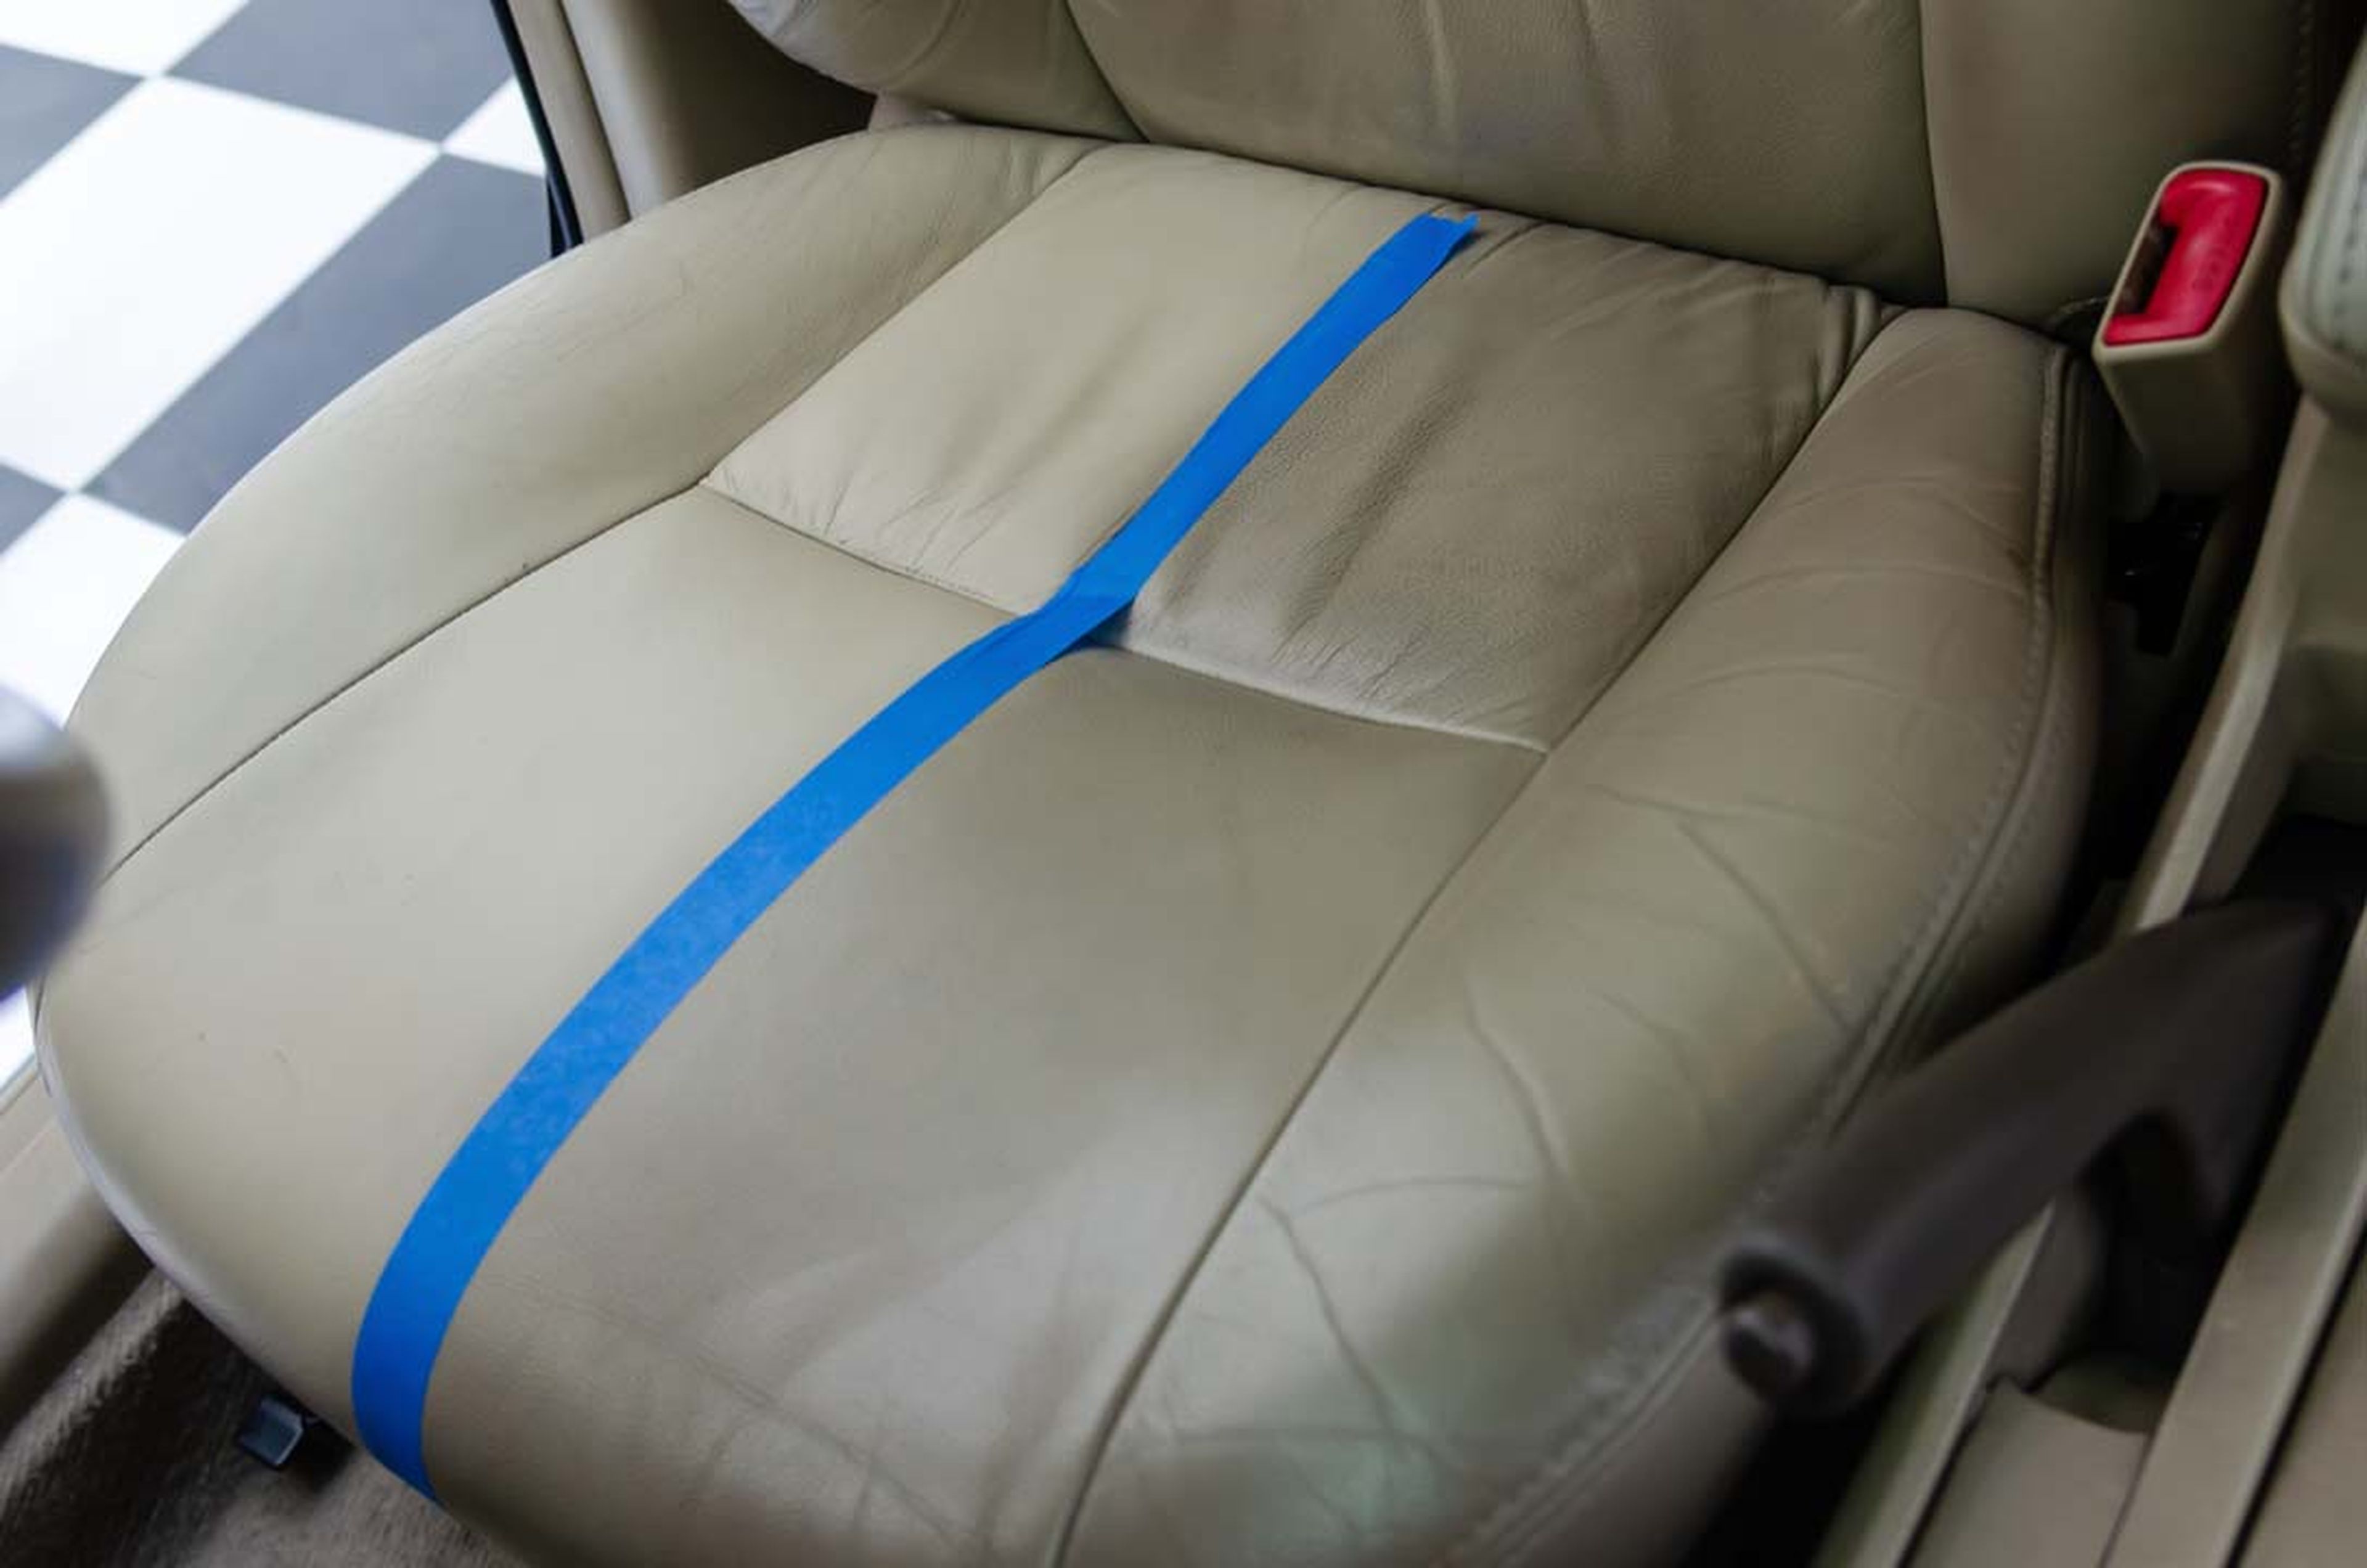 Limpiar la tapicería del coche: Guía completa - Swipcar